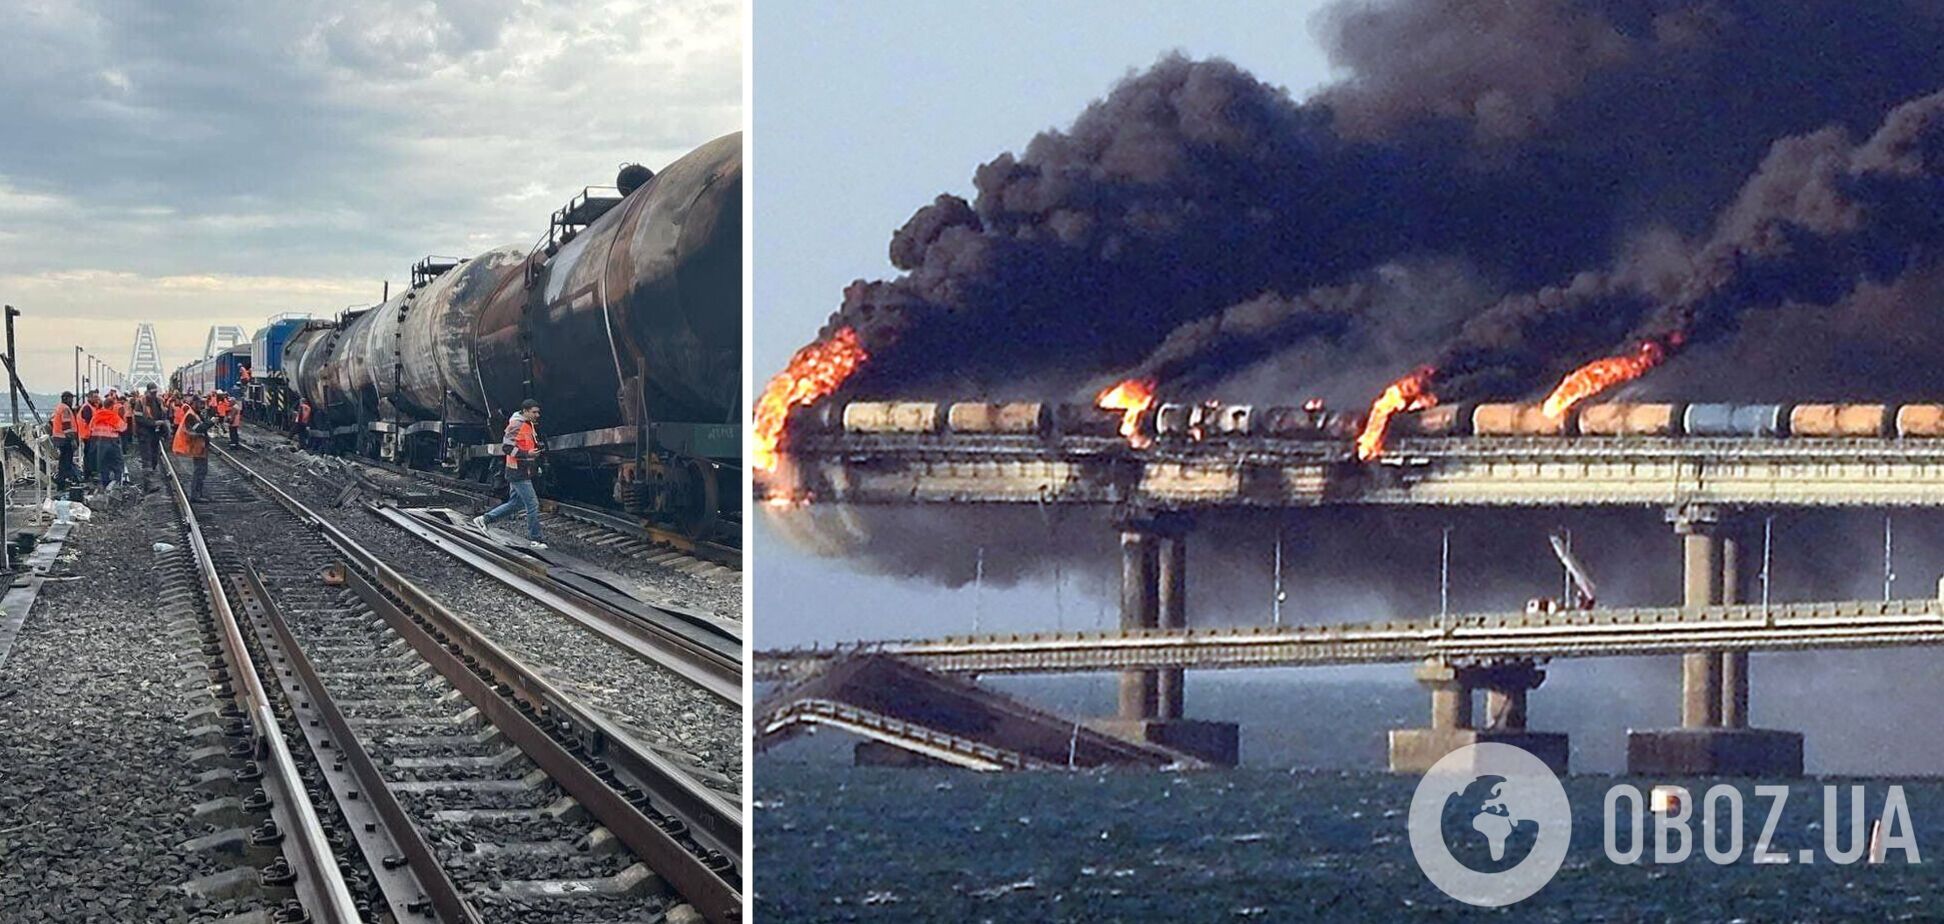 Взрывчатки в грузовике не было, но эта версия выгодна ФСБ: в InformNapalm указали на 'нюансы' со взрывом на Крымском мосту